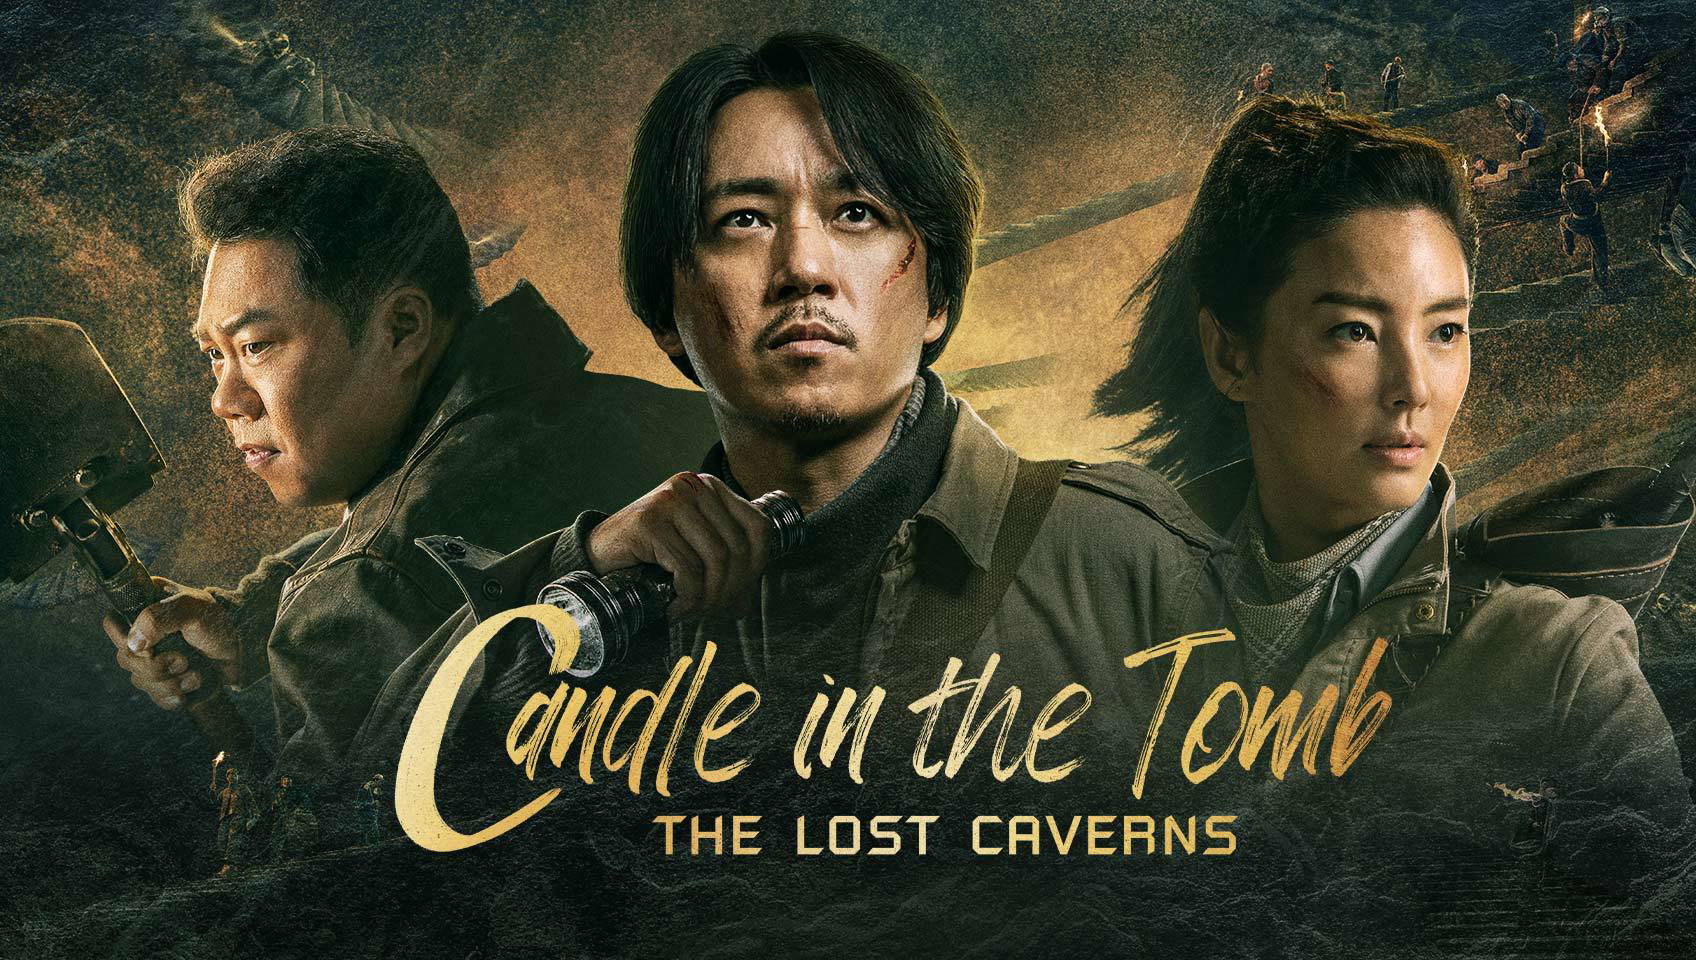 Ma Thổi Đèn: Mê Động Long Lĩnh Candle in the Tomb: The Lost Caverns